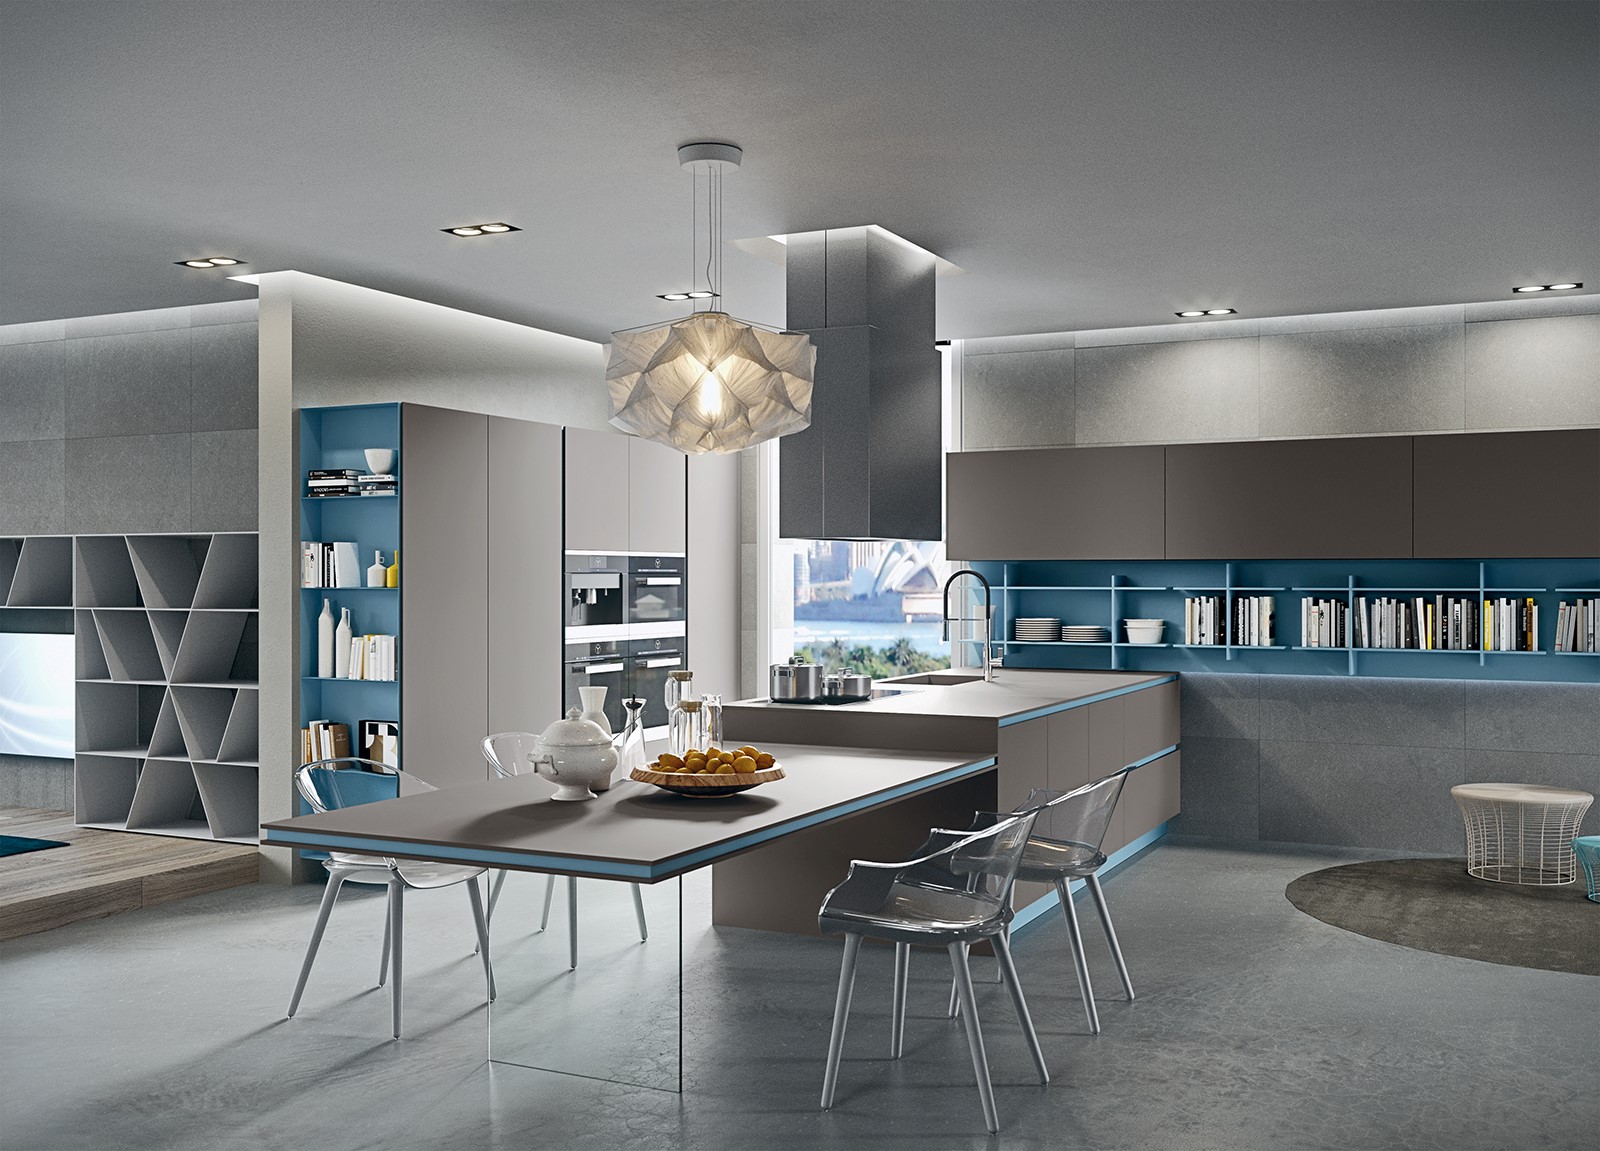 طراحی کابینت آشپزخانه مدرن خاکستری | طراحی دکوراسیون منزل,دکوراسیون داخلی منزل,دکور